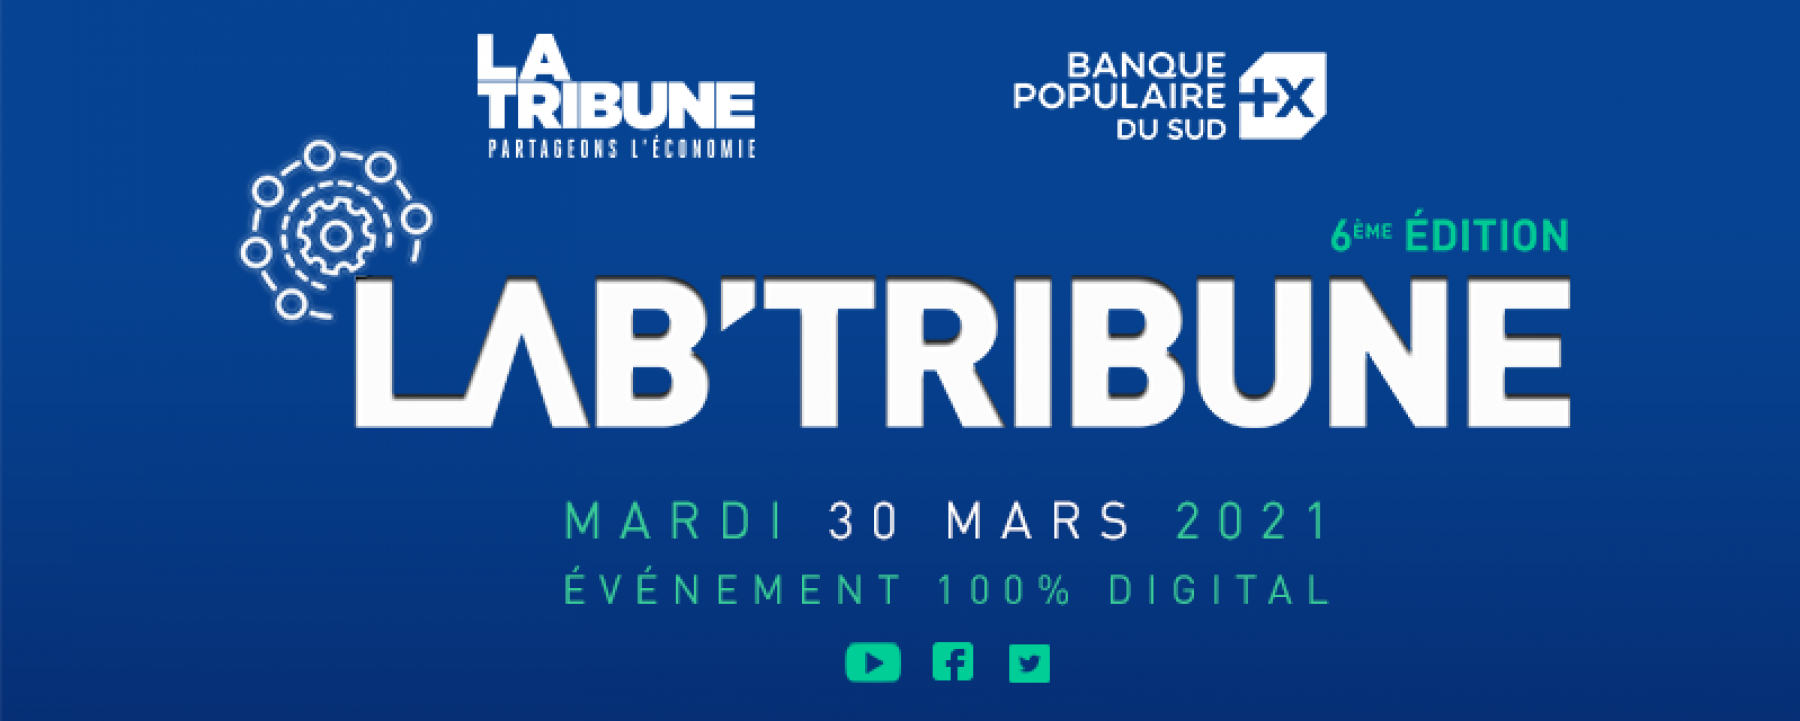 Lab’ Tribune 2021, organisé le 30 mars 2021